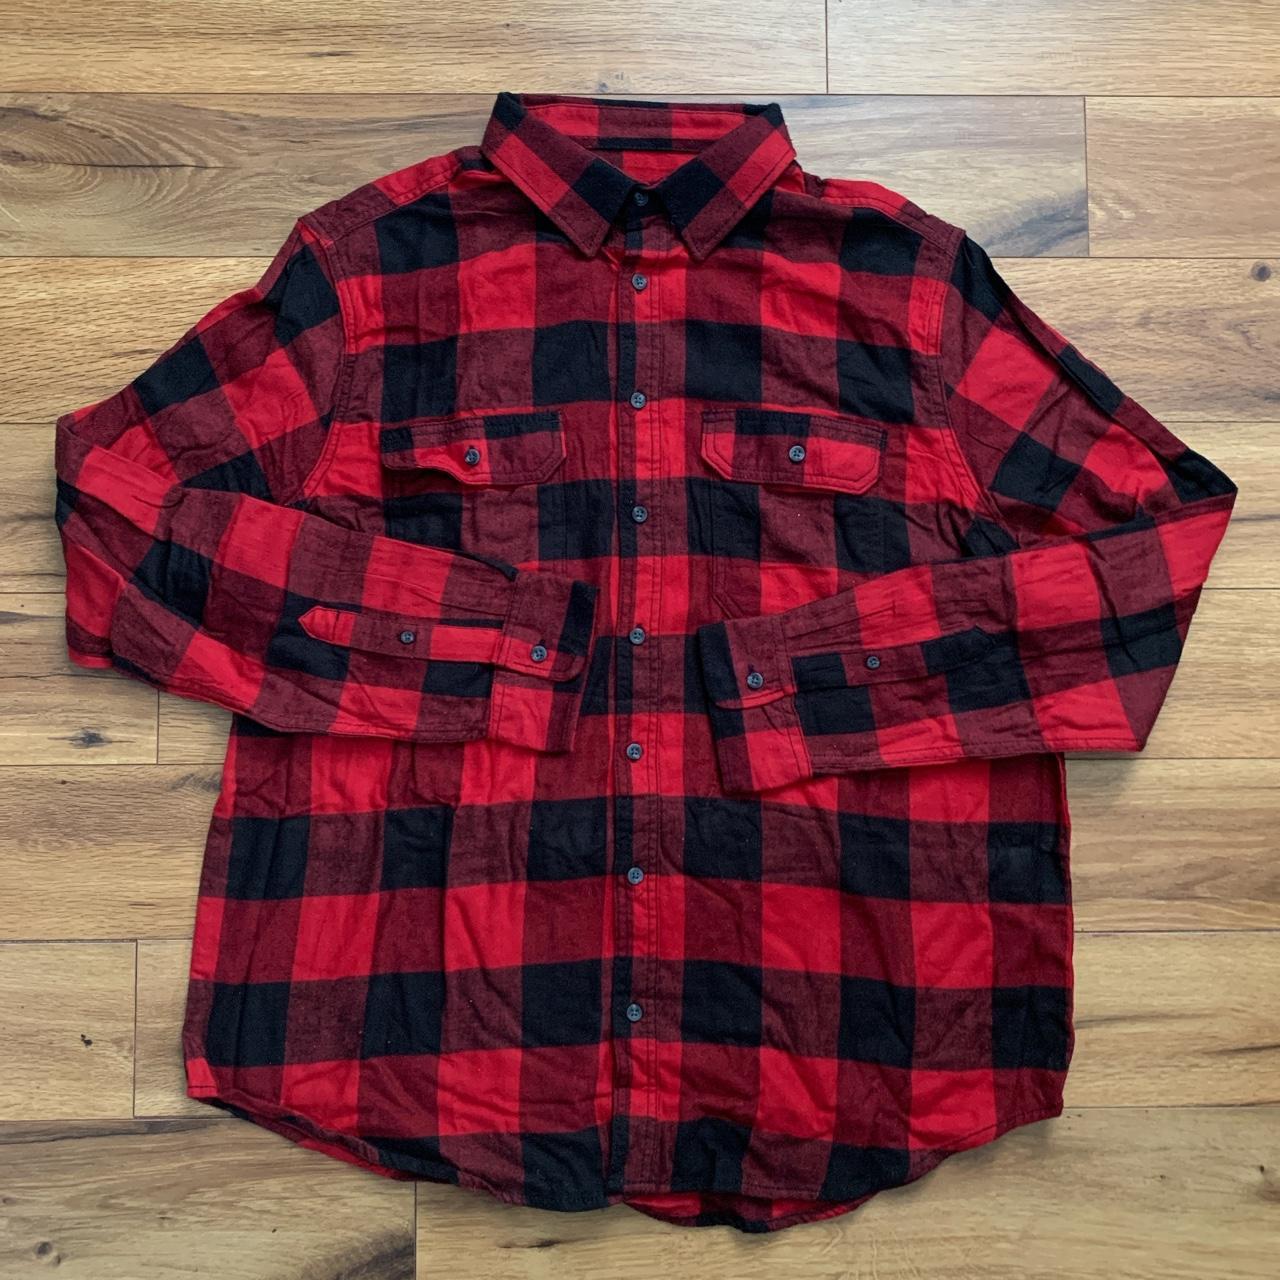 . 🏁 Red flannel shirt 🏁 XLT 46-48. Length 30 pit 2... - Depop